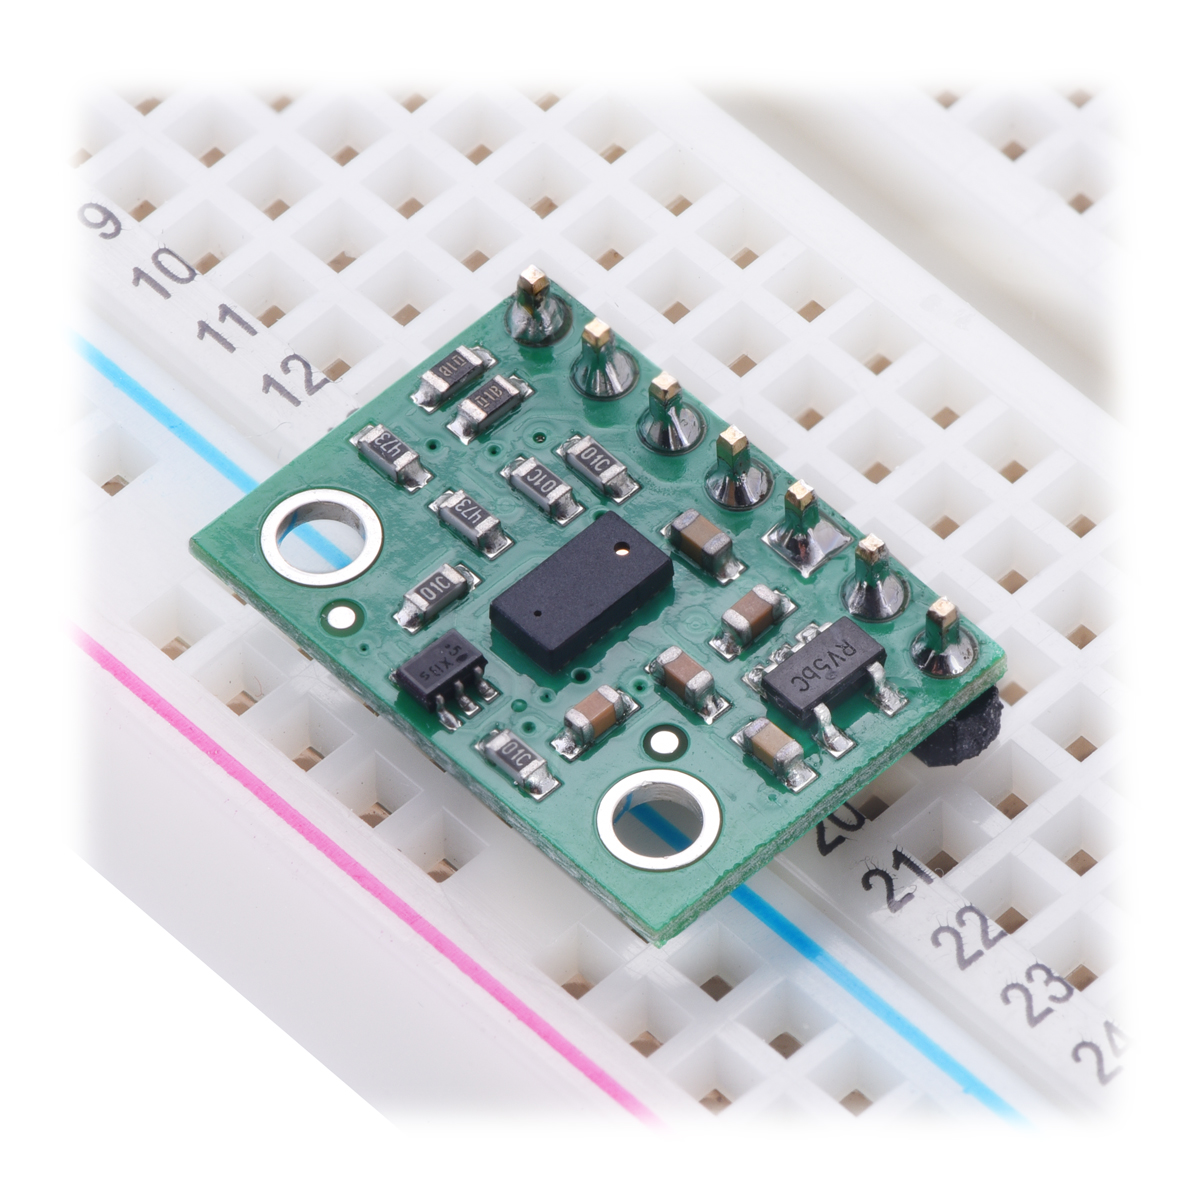 VL53L0X V2 Laser Time-of-Flight Distance Sensor Module for Arduino 